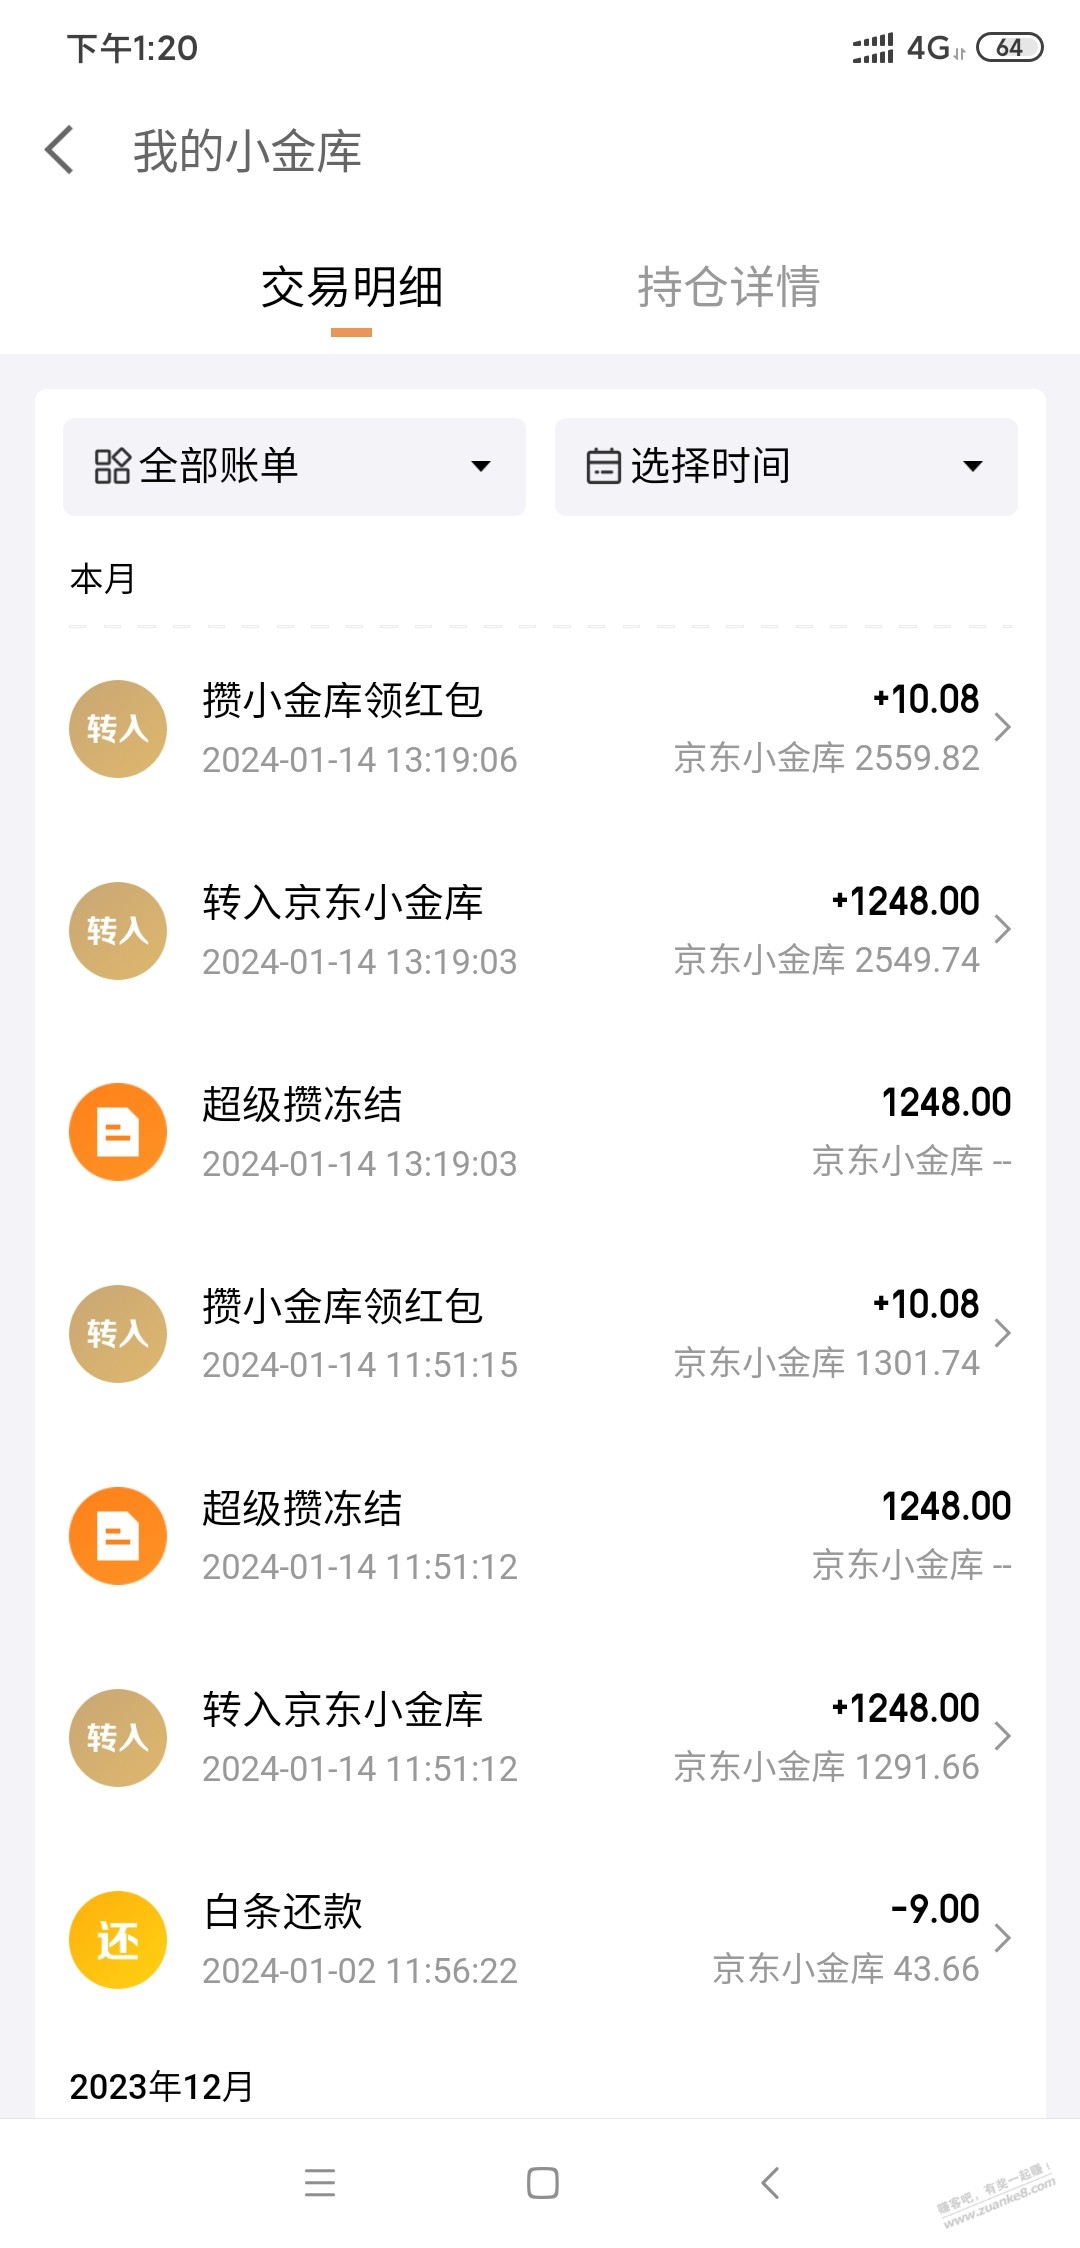 京东10.08元一个账户可以参加2次-惠小助(52huixz.com)